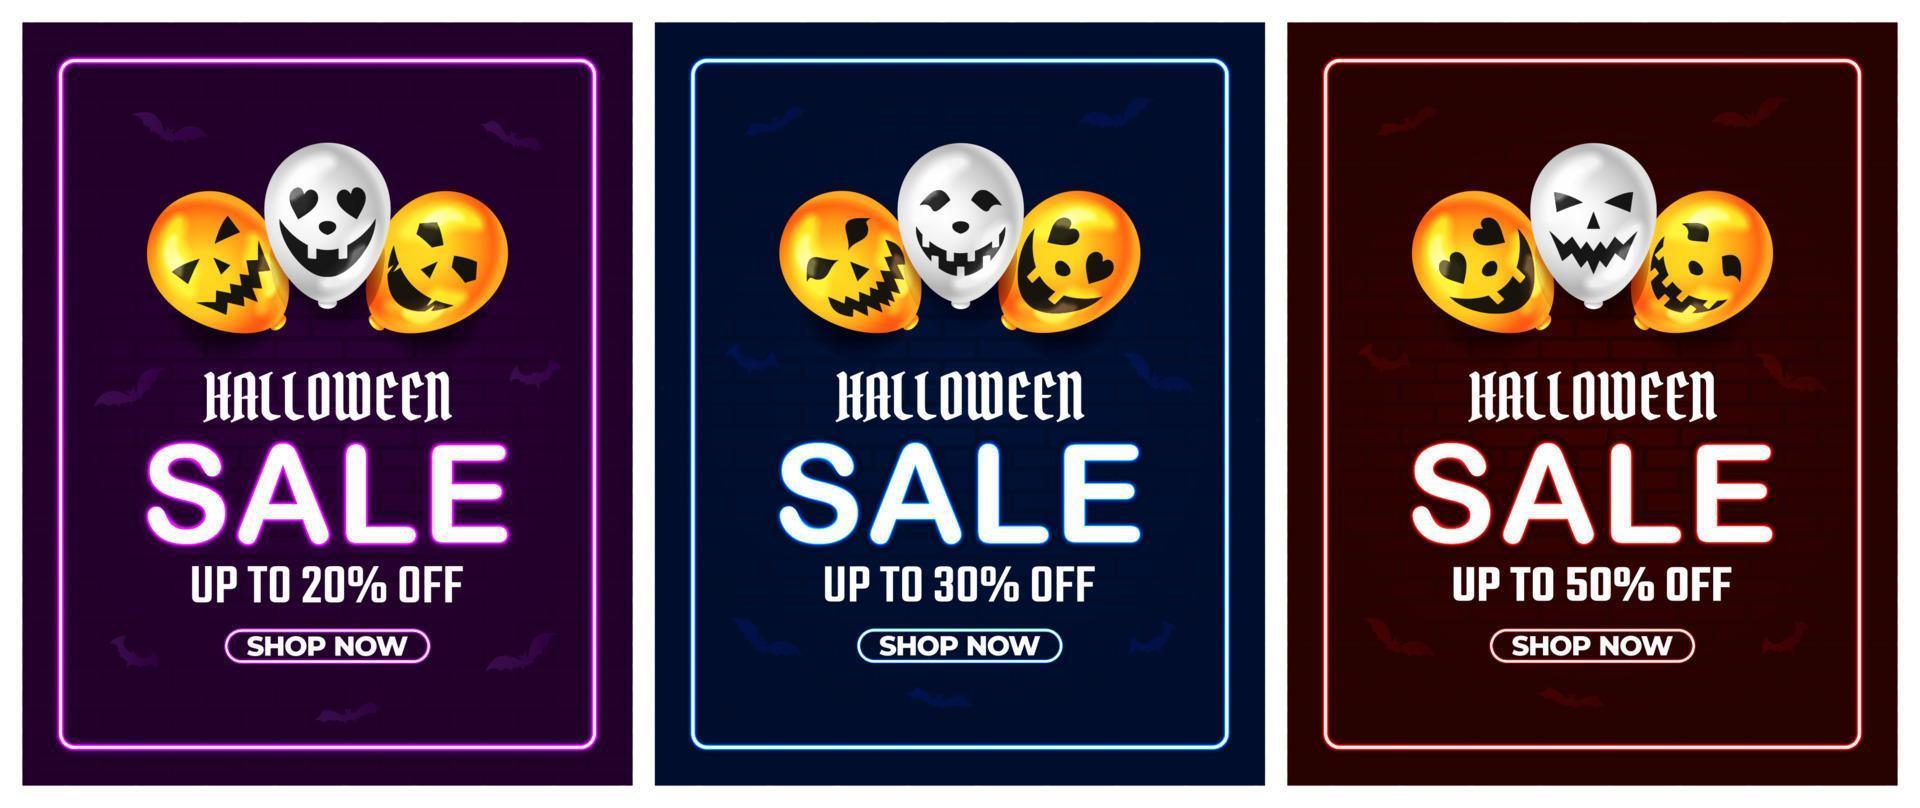 promoção de venda de halloween com balão assustador e vetor de textura de tijolo, fundo de feliz dia das bruxas para promoção de varejo de negócios, banner, cartaz, mídia social, feed, convite